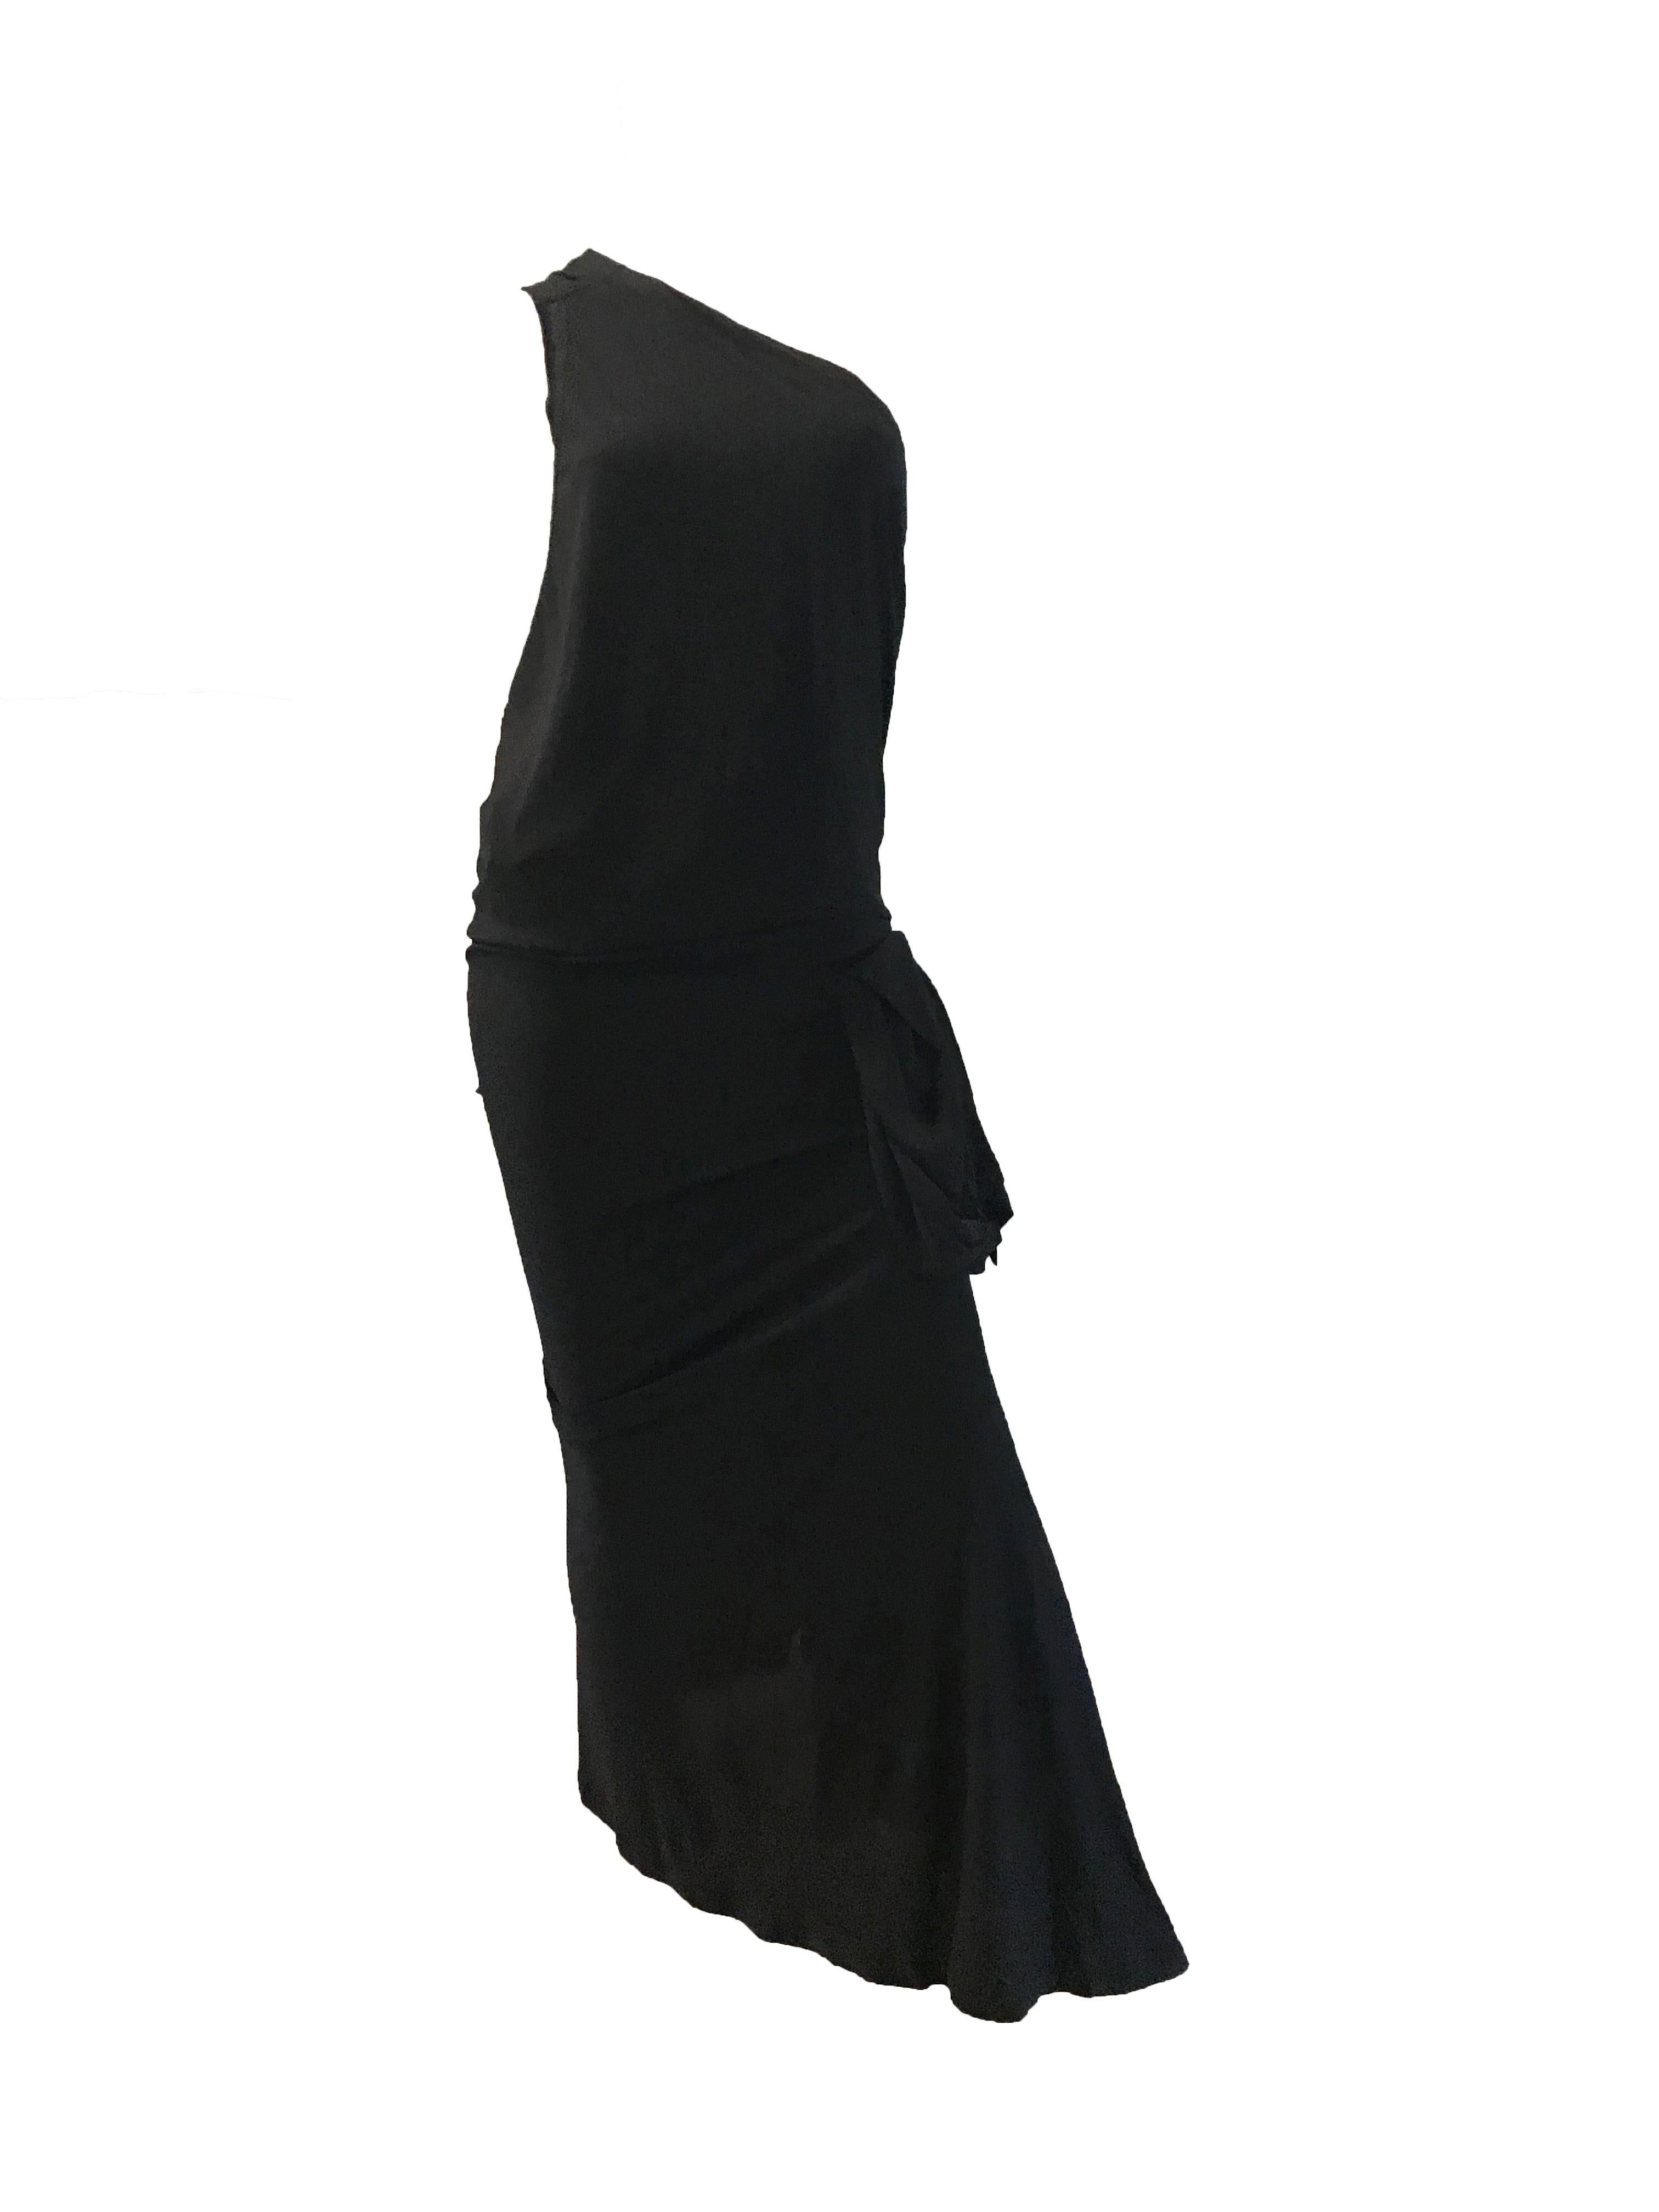 Jean Paul Gaultier robe noire à une épaule avec pochette attachée 

100% rayonne 
buste 31